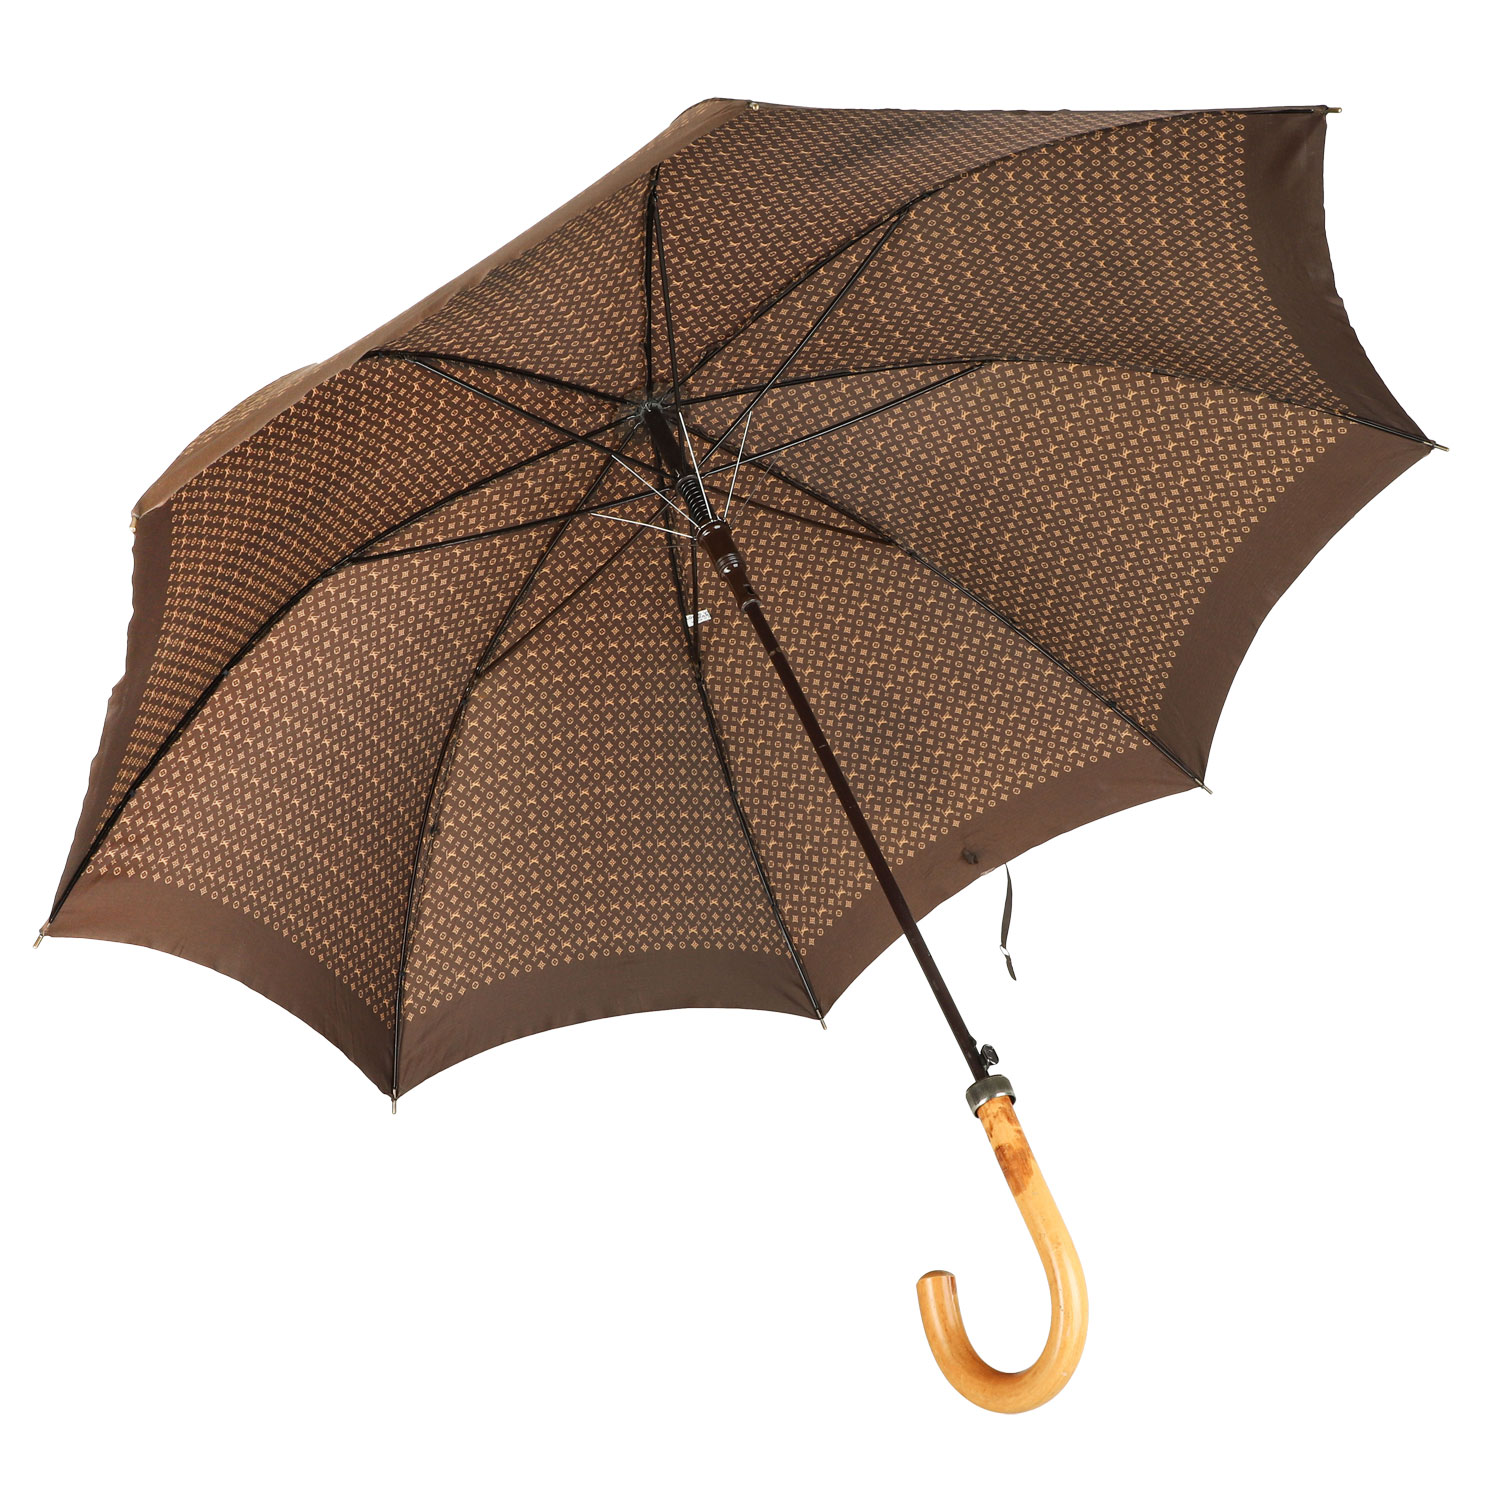 LOUIS VUITTON VINTAGE Regenschirm "PARAPLUIE MONOGRAM", Wohl 80er Jahre. - Bild 3 aus 4